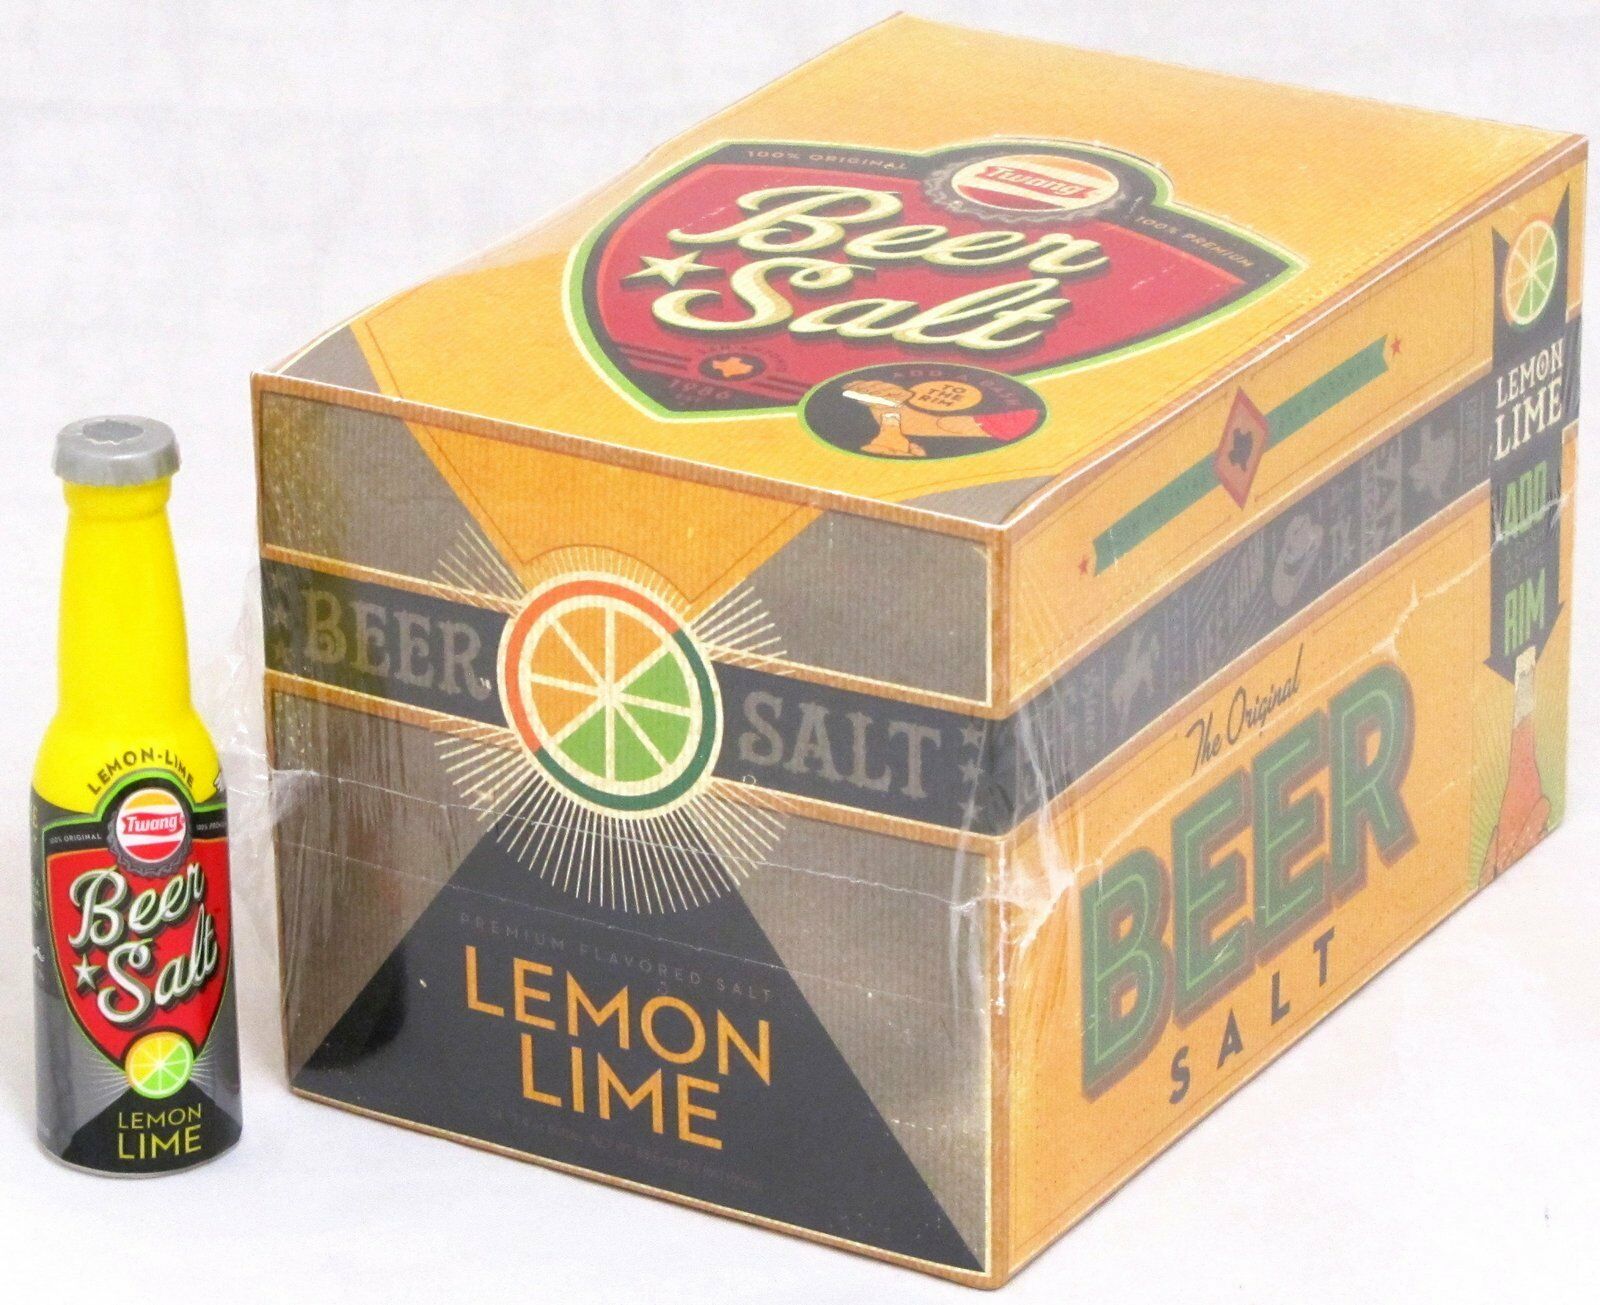 Twang The Original Beer Salt Lemon Lime 1.4 Oz Bottles Bulk 24 Count Box